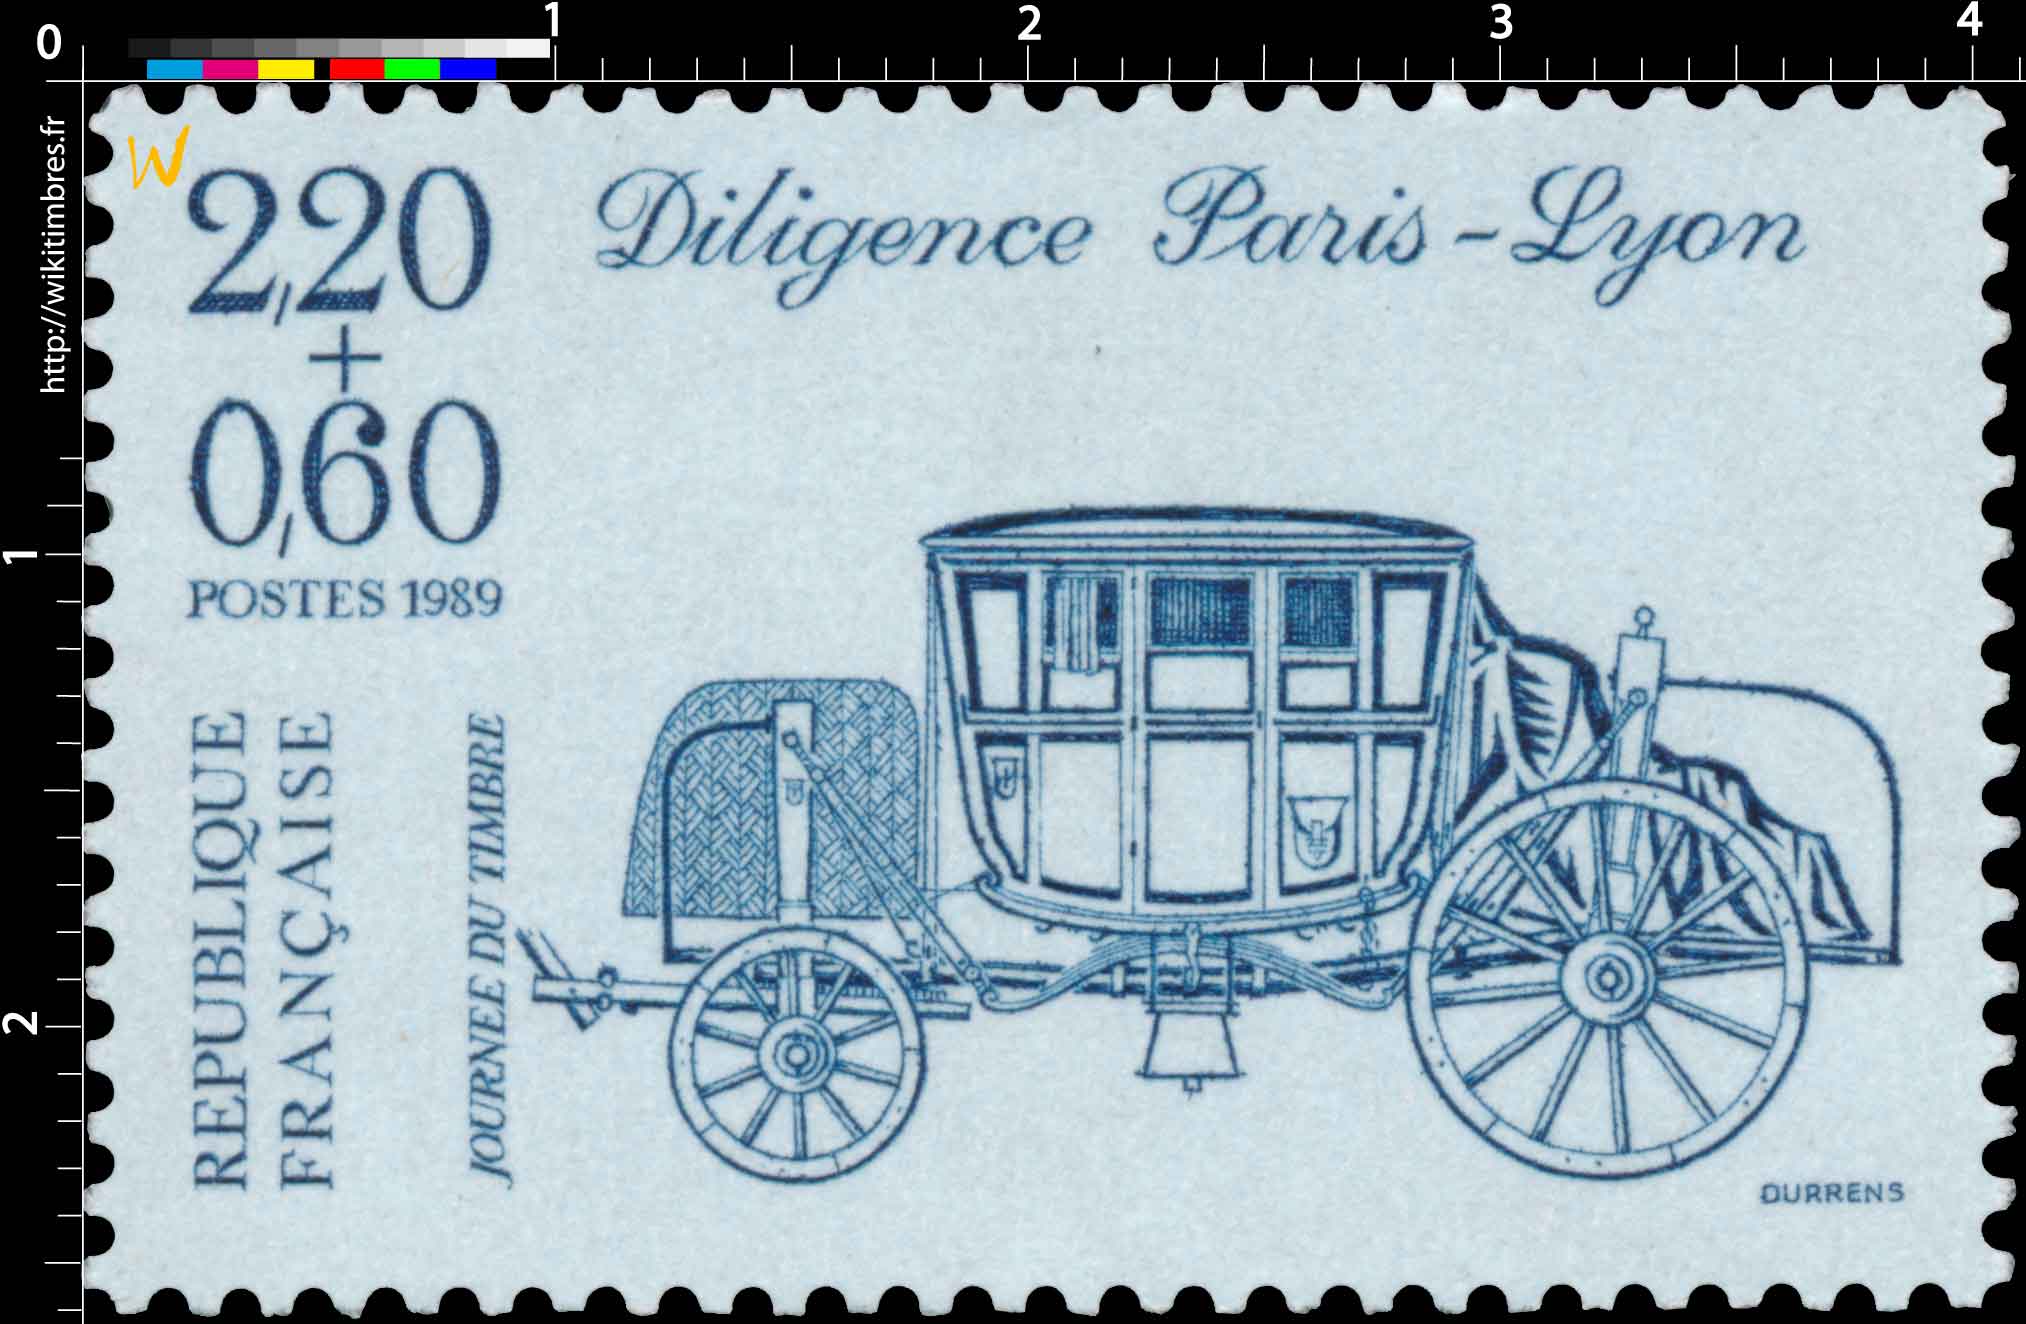 1989 JOURNÉE DU TIMBRE Diligence Paris-Lyon